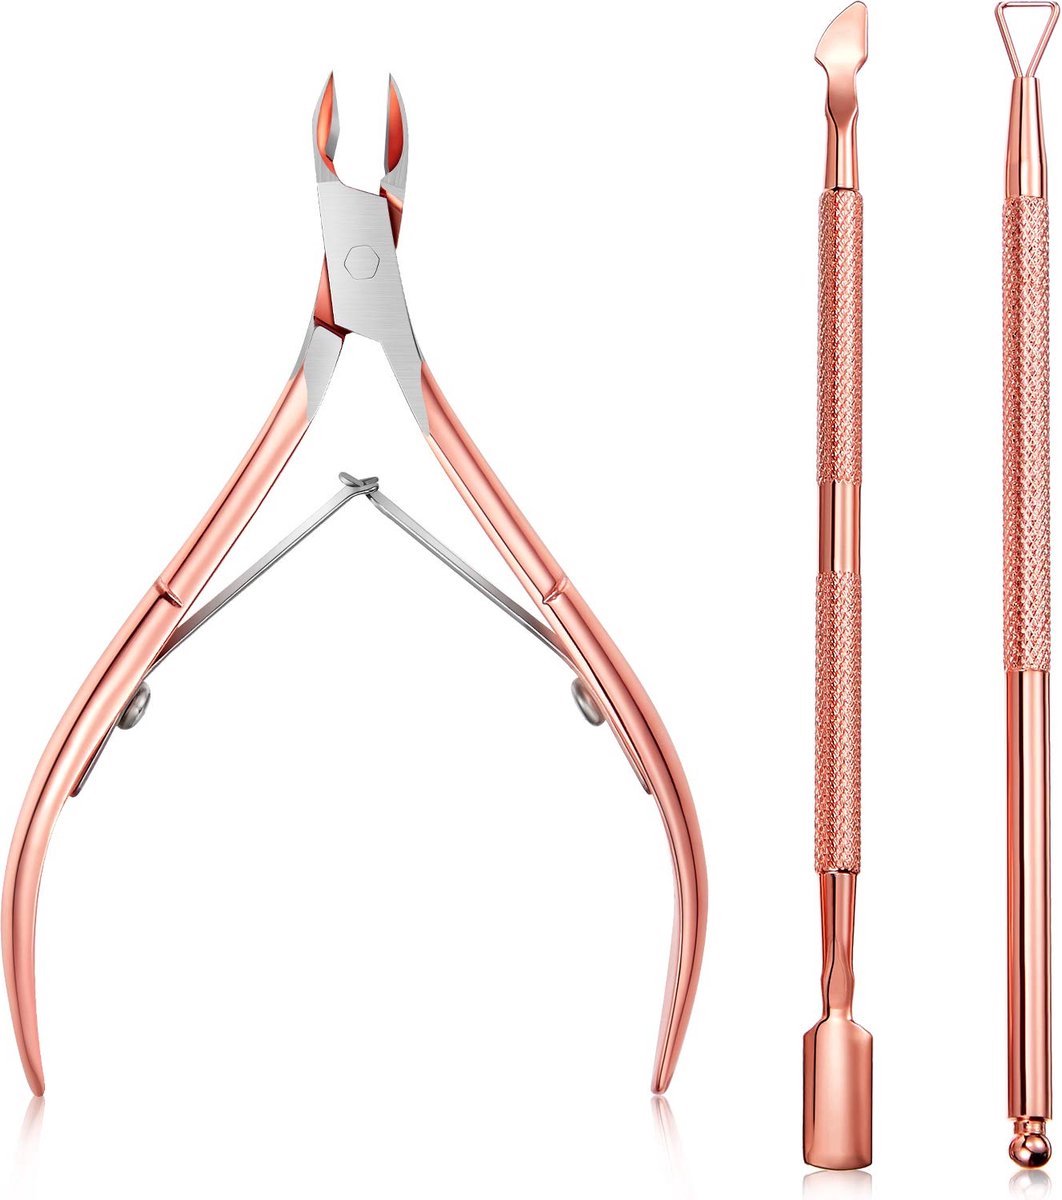 New Age Devi - Verzorgde nagelriemen in een handomdraai - Driedelige set met nagelriemknipper, schaar en bokkenpootje - Gemaakt van roestvrij staal in stijlvol roségoud